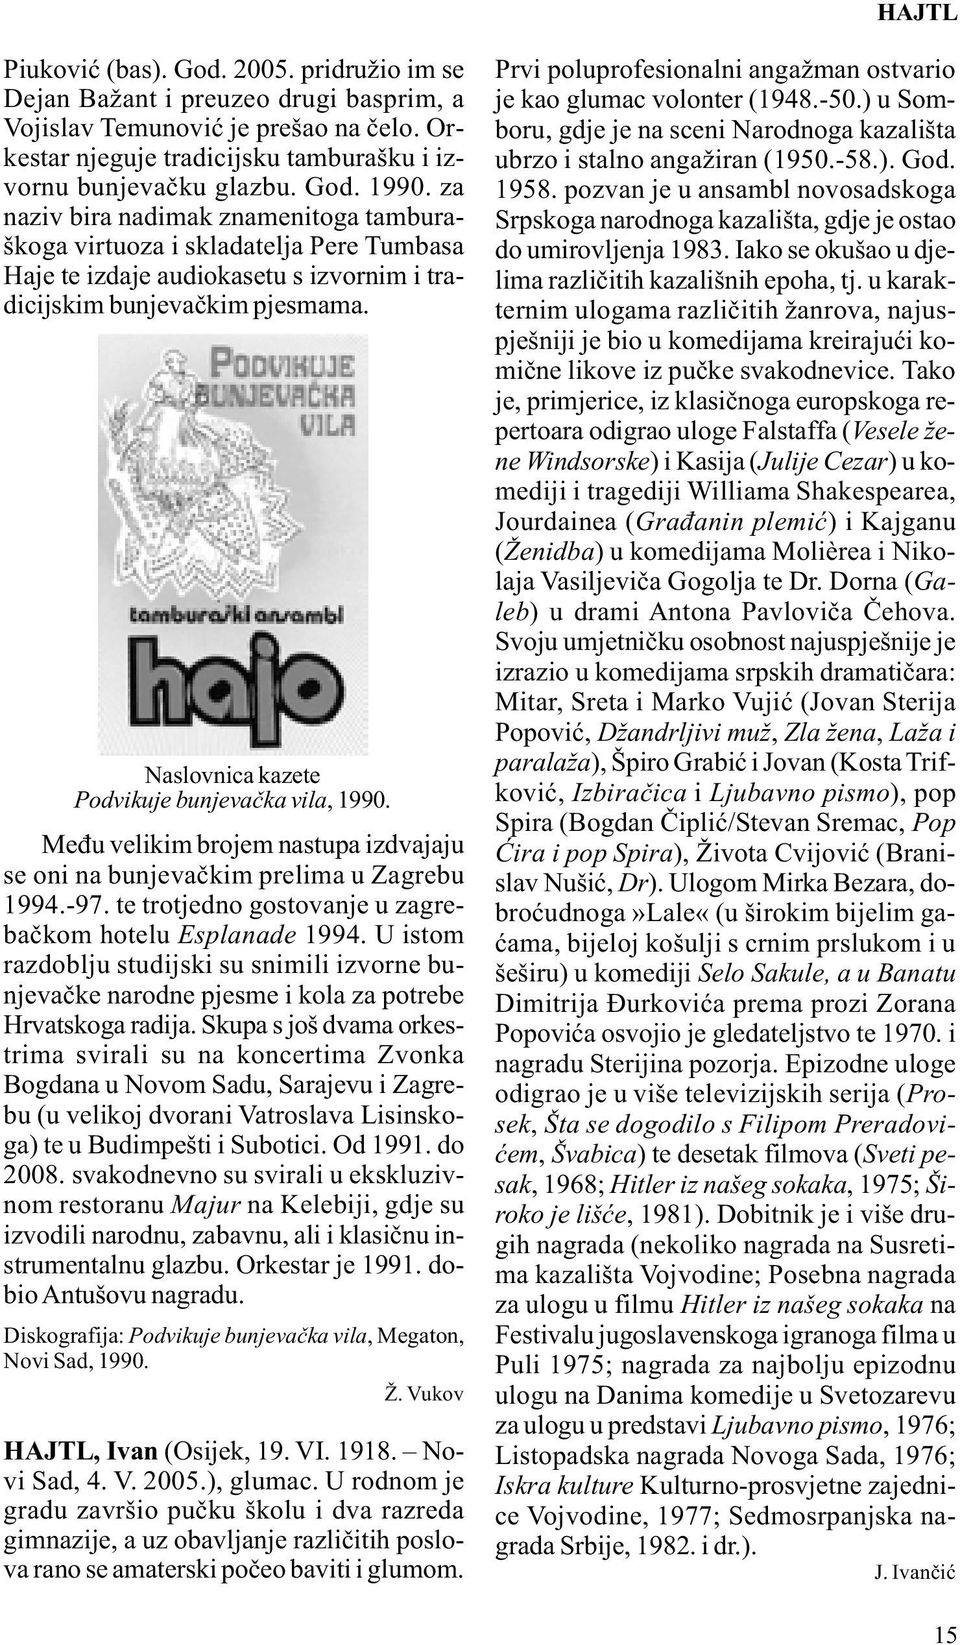 Naslovnica kazete Podvikuje bunjevačka vila, 1990. Među velikim brojem nastupa izdvajaju se oni na bunjevačkim prelima u Zagrebu 1994.-97. te trotjedno gostovanje u zagrebačkom hotelu Esplanade 1994.